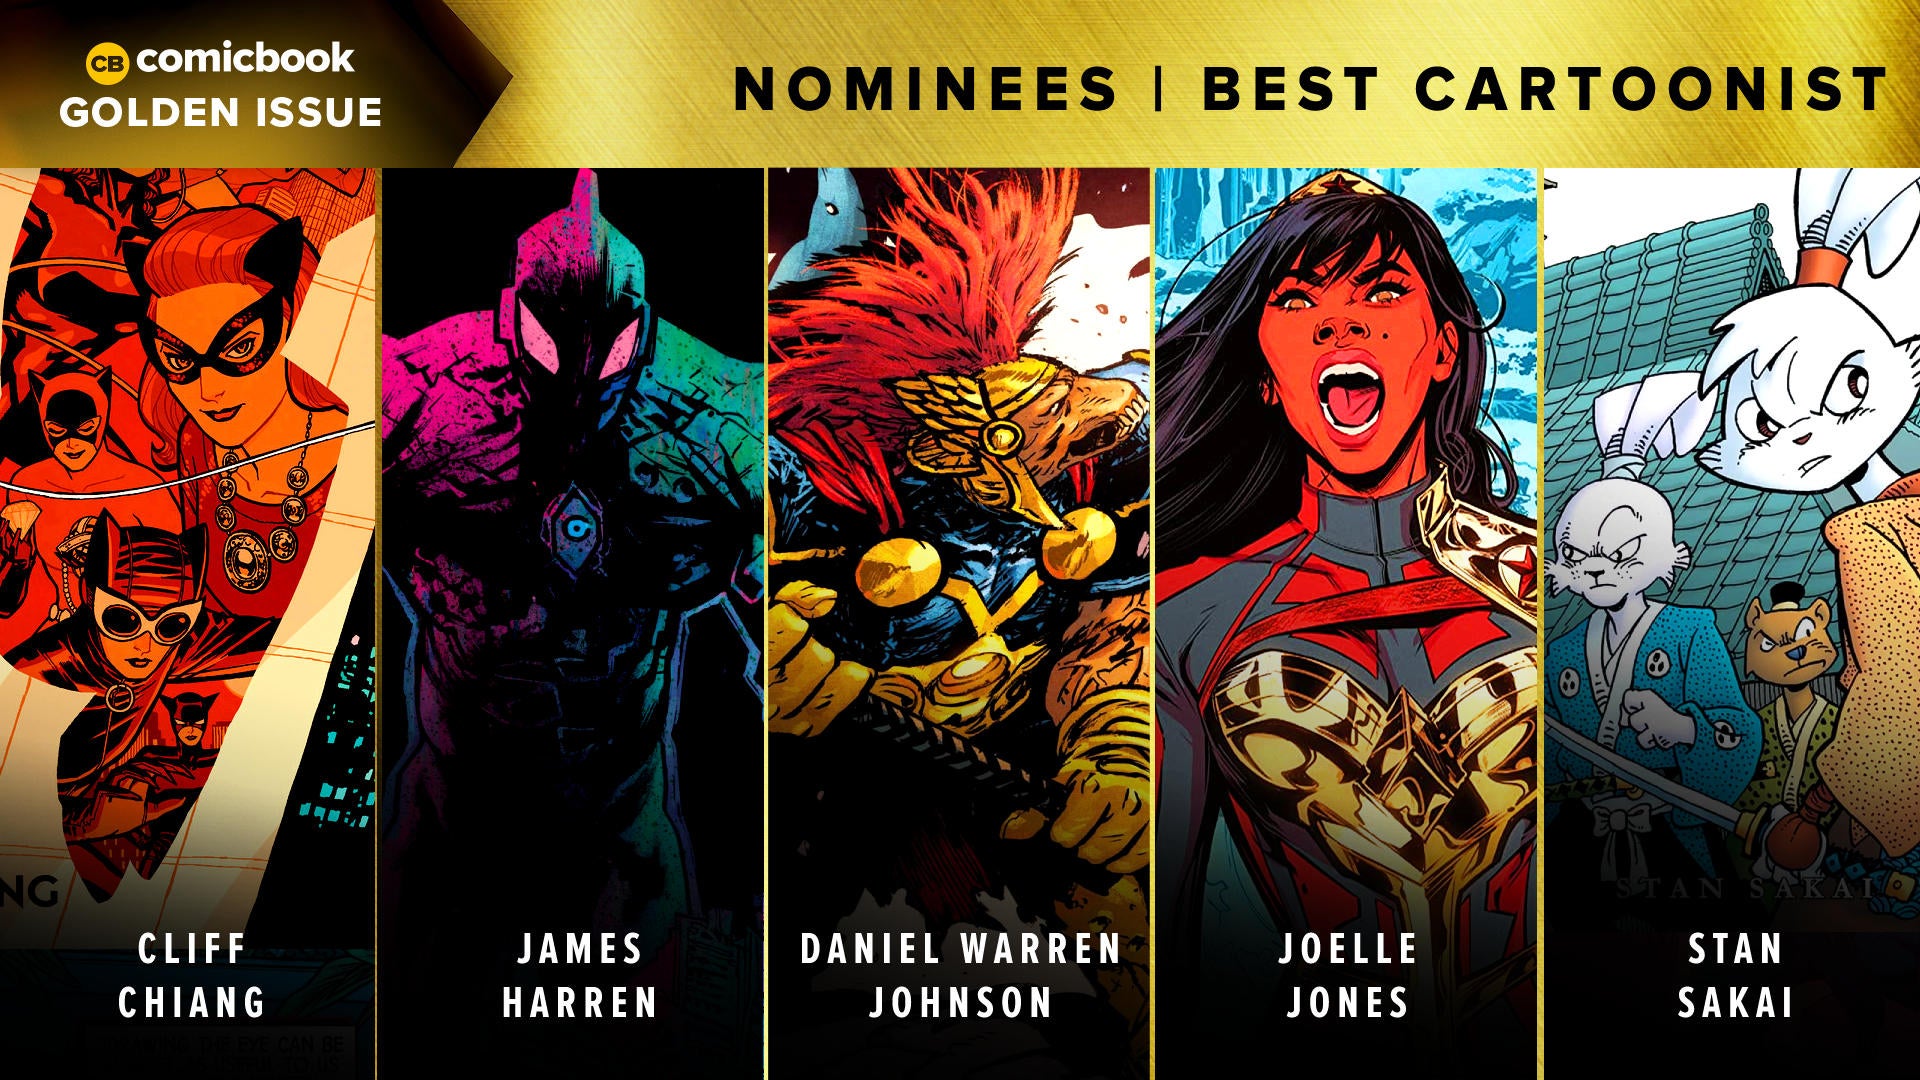 golden-issues-2021-nominees-best-cartoonist.jpg